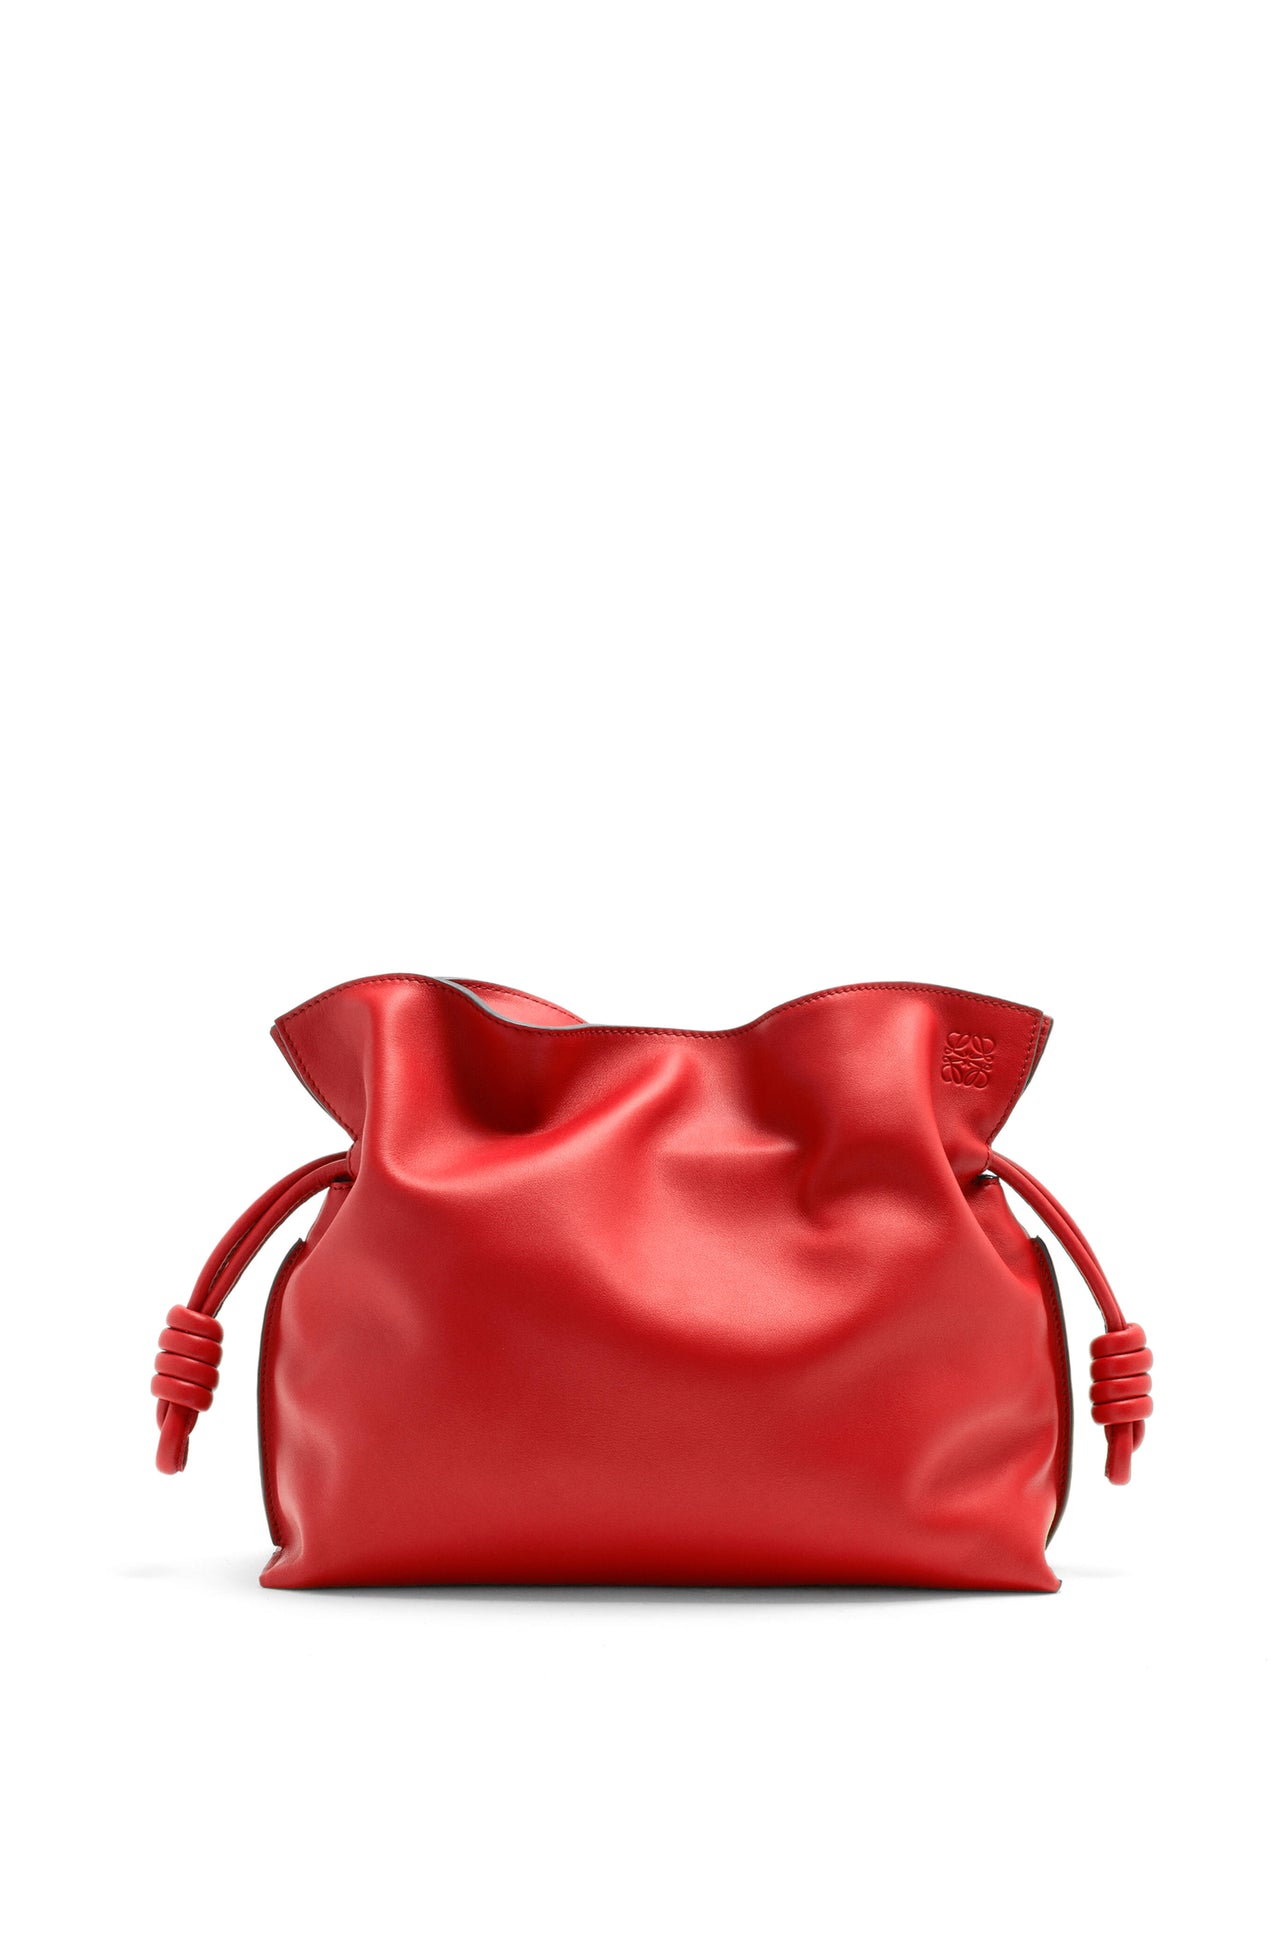 Loewe Medium Flamenco clutch in nappa calfskin (Colour: Red)